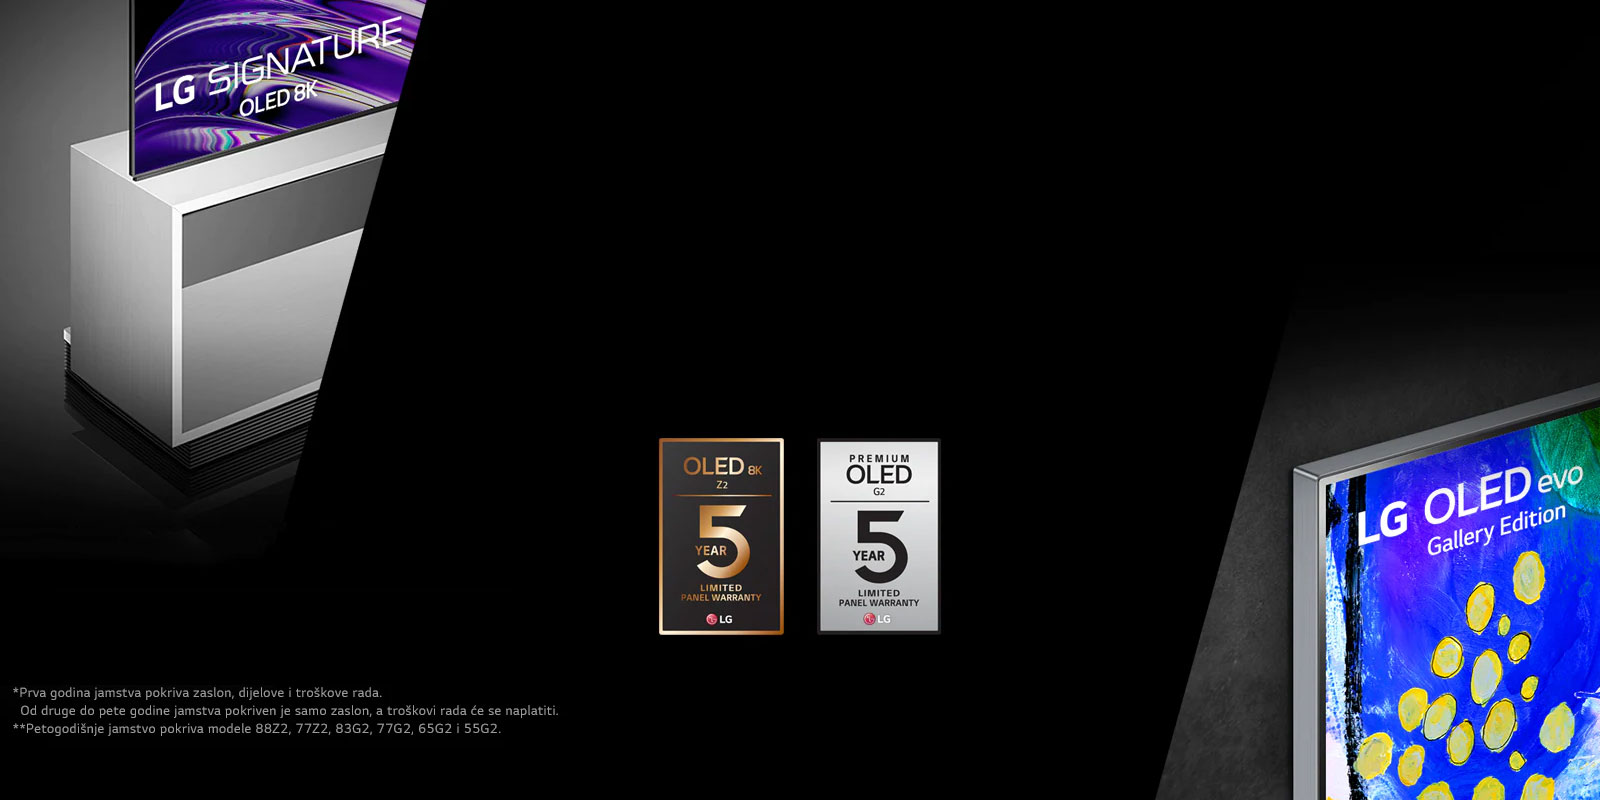 Lijeva strana slike prikazuje bočni prikaz modela LG OLED Z2 sa samostojećim stalkom. Desna strana prikazuje Gallery Design modela LG OLED G2. Logotipovi petogodišnjeg jamstva nalaze se u sredini slike.